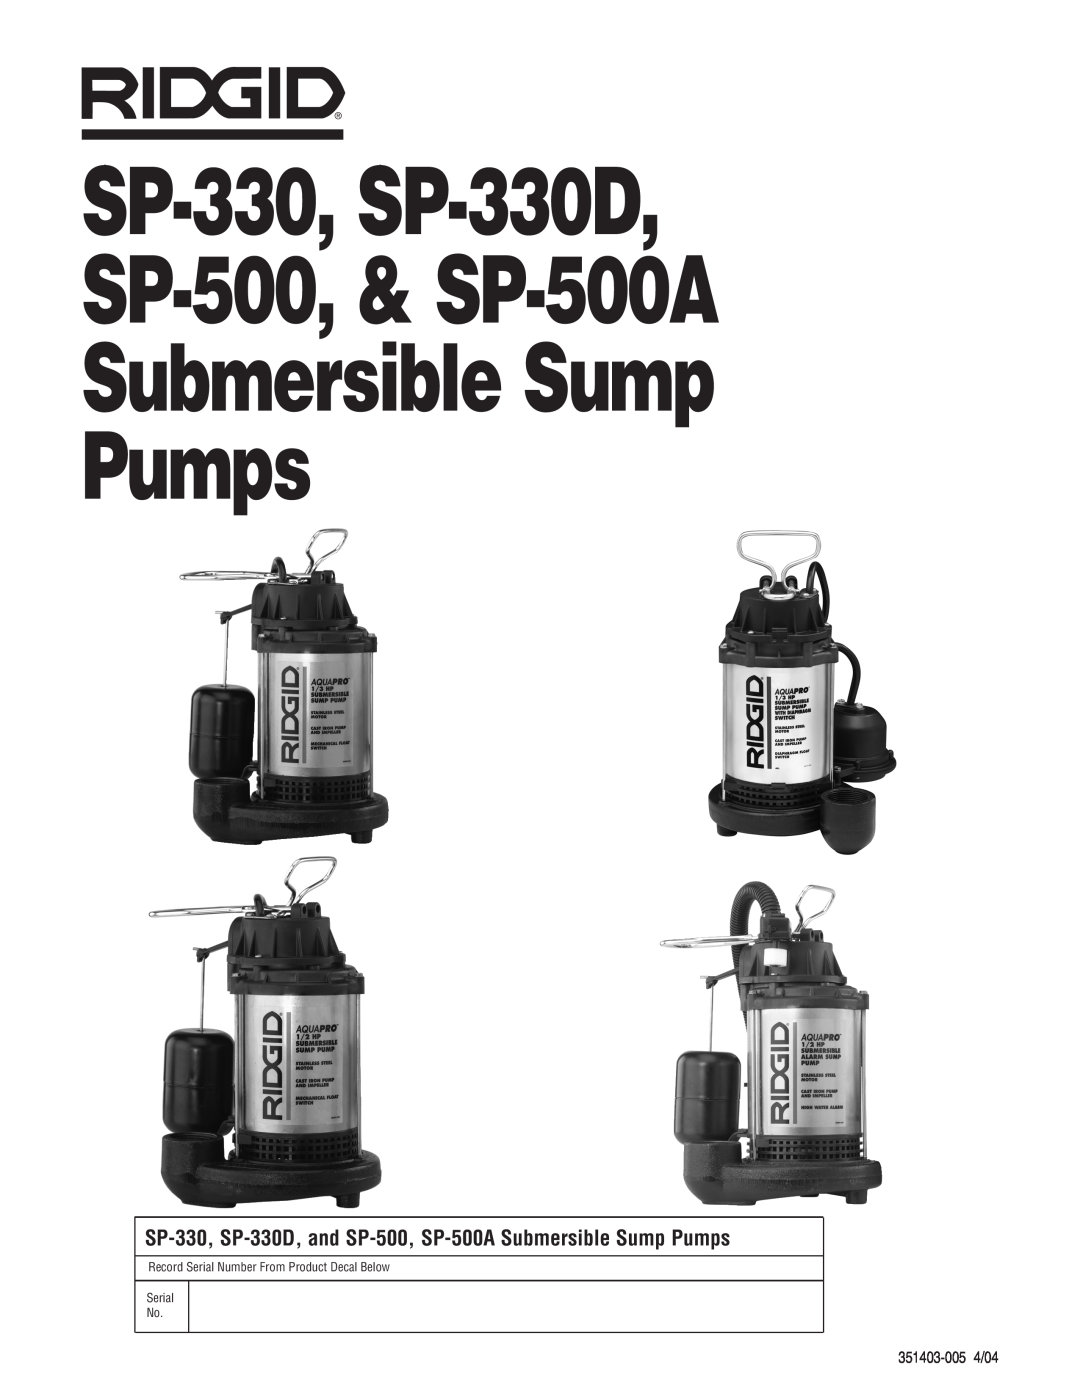 RIDGID SP500A manual SP-330, SP-330D SP-500,& SP-500A Submersible Sump, Pumps, 351403-0054/04, Serial No 